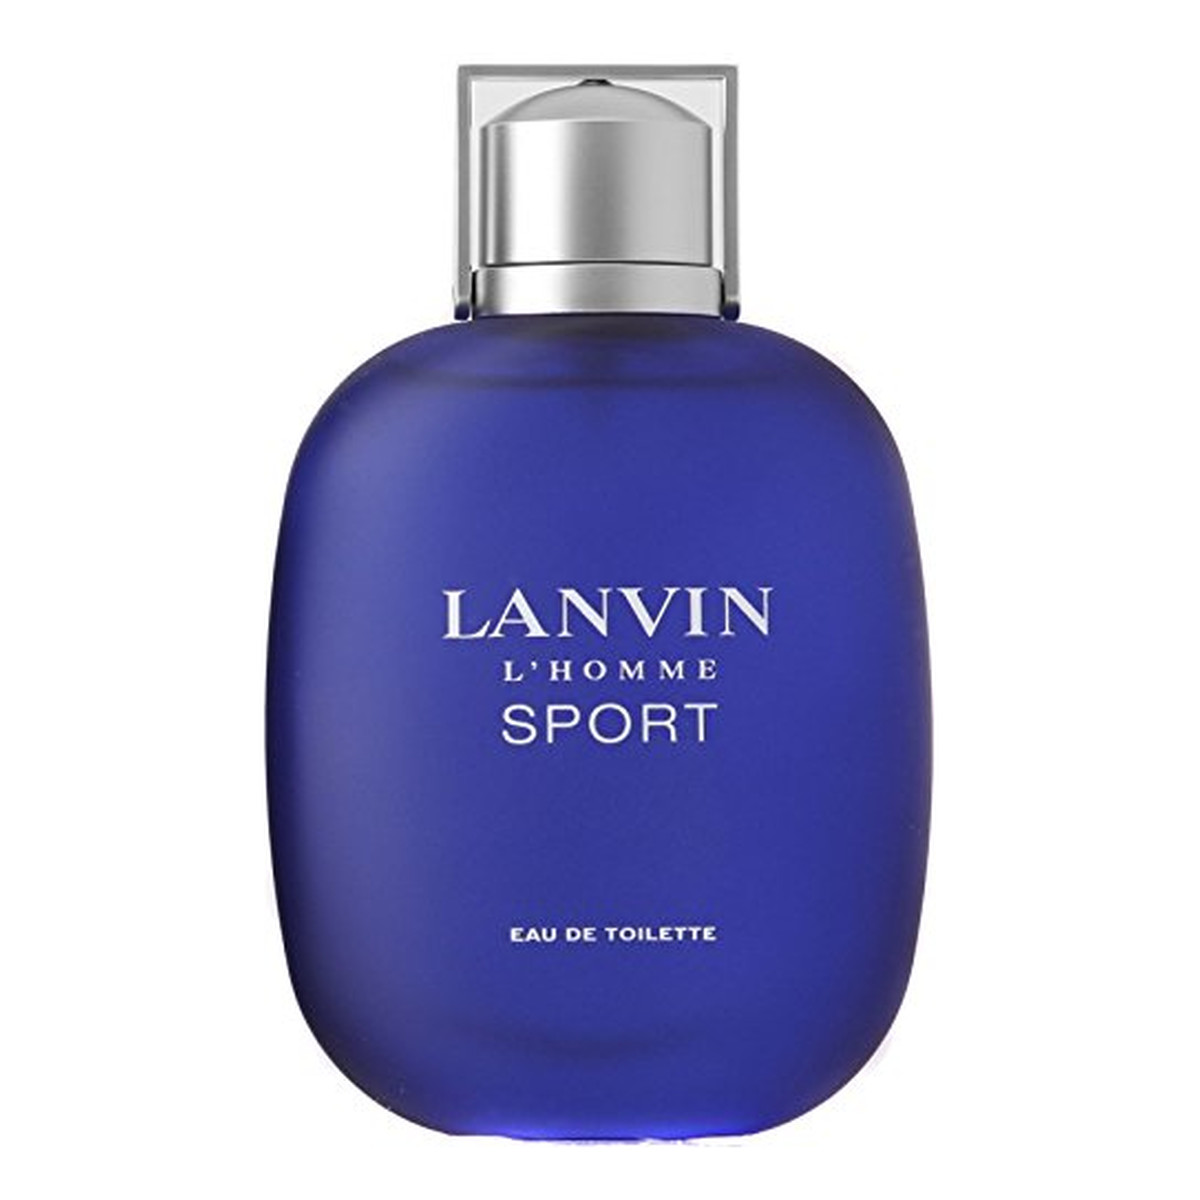 Lanvin L'Homme Sport woda toaletowa dla mężczyzn 100ml